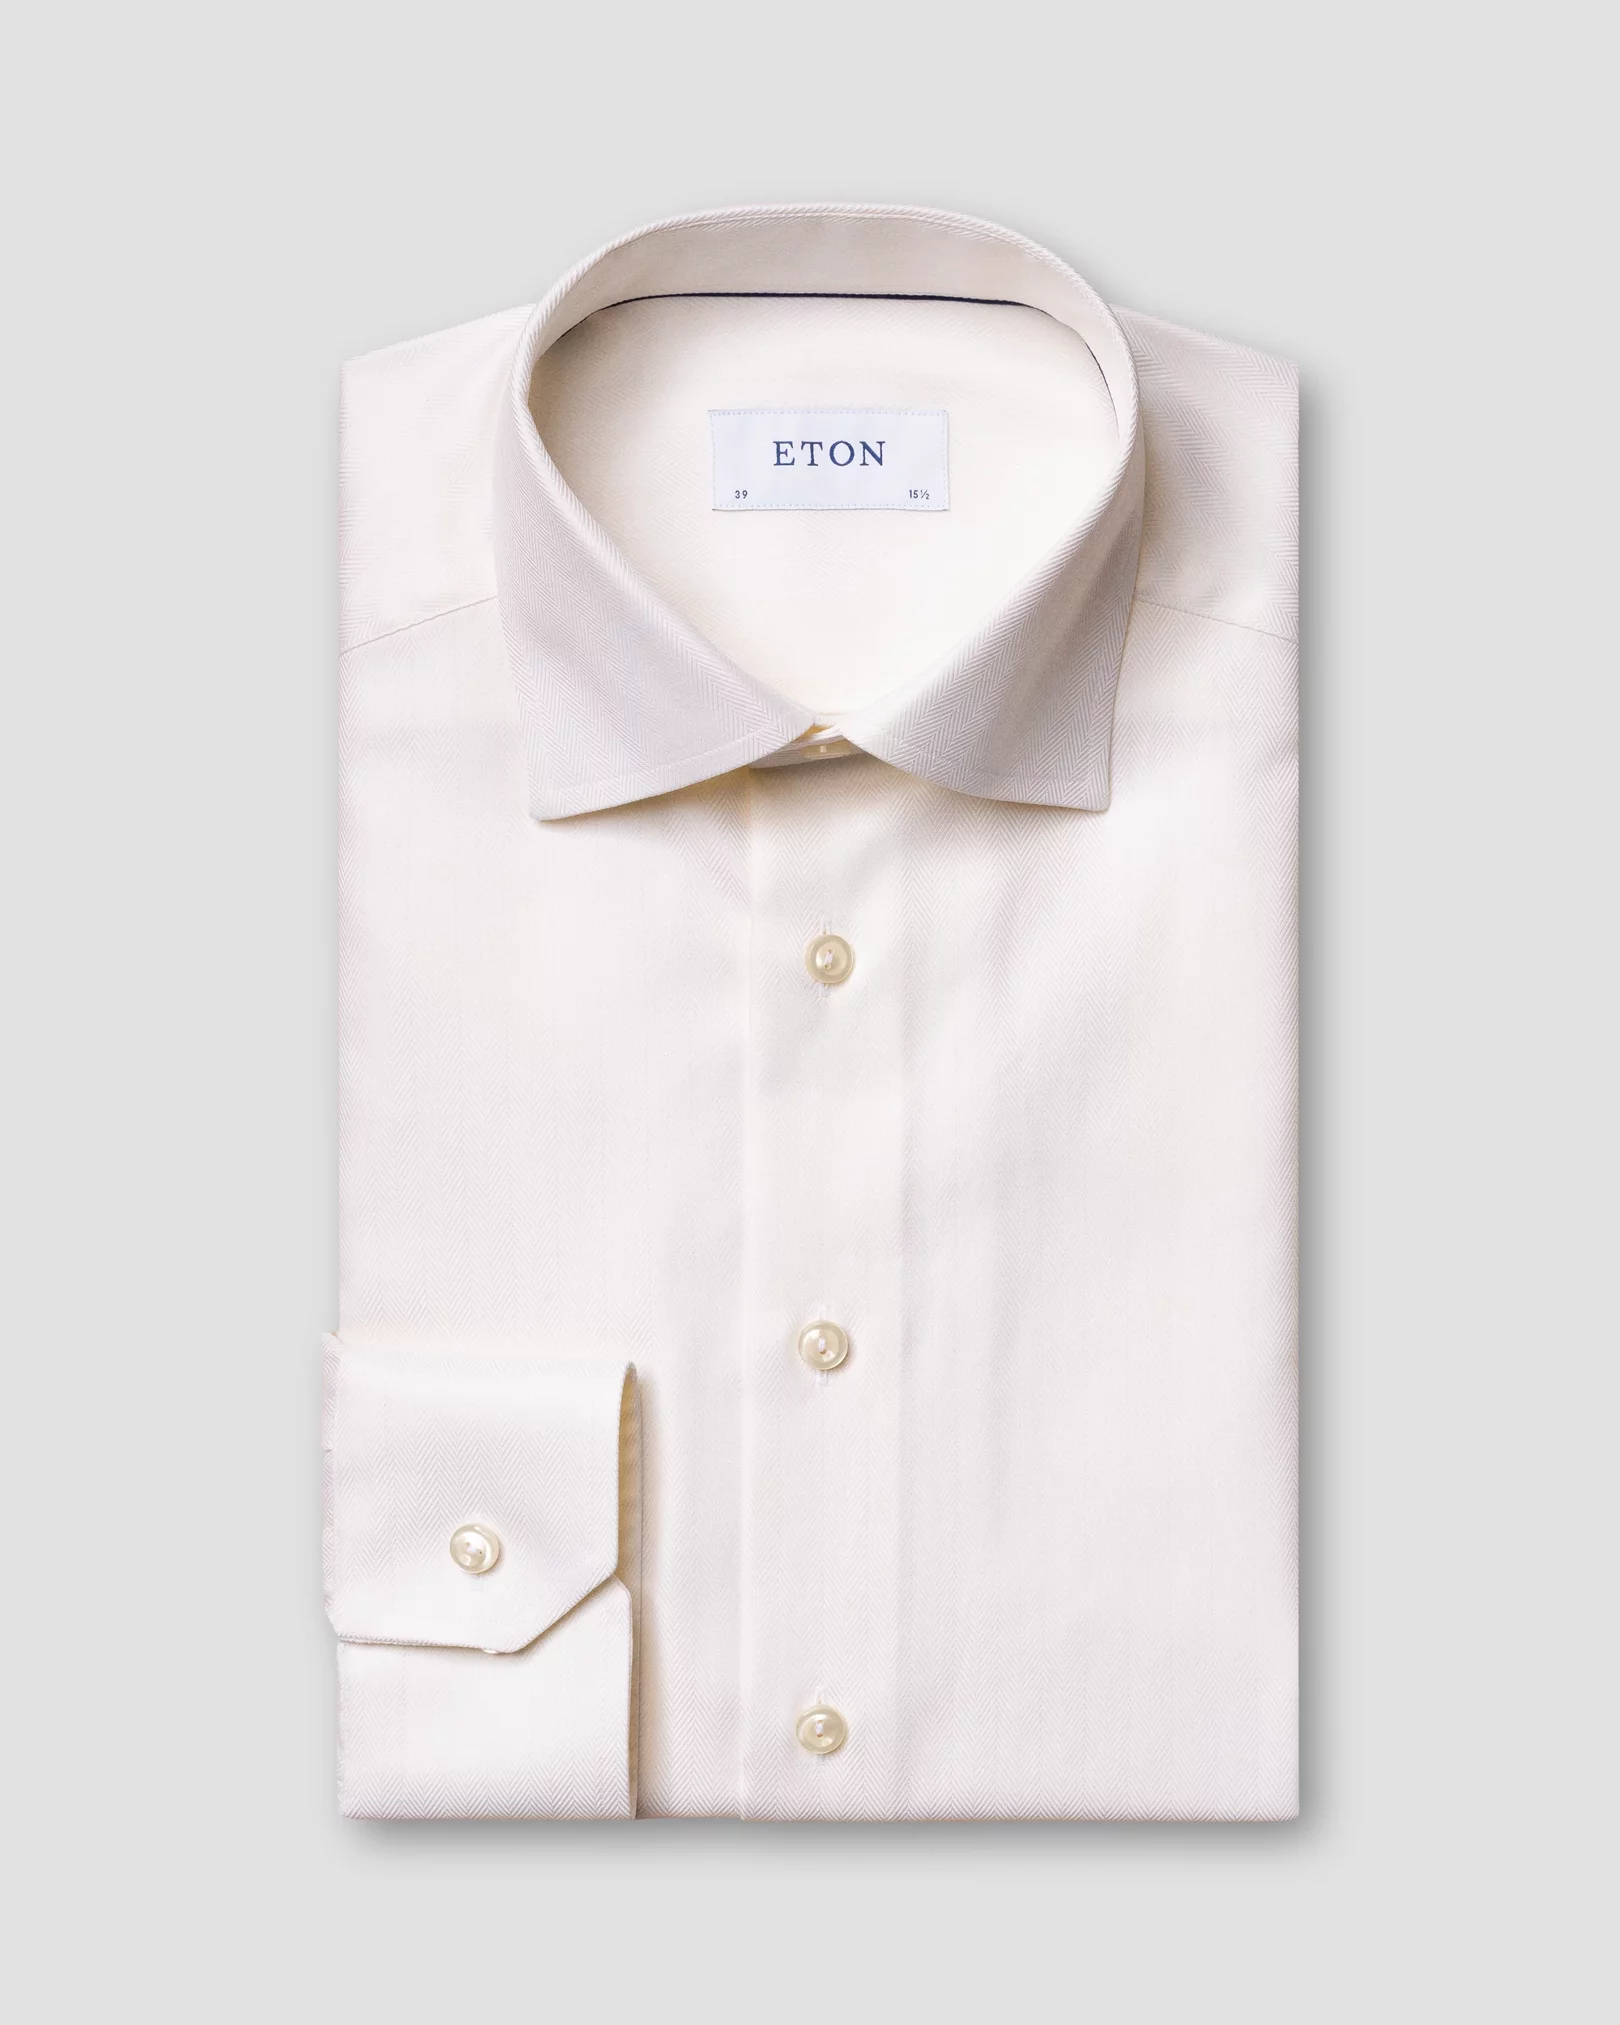 Eton - off white herringbone twill shirt